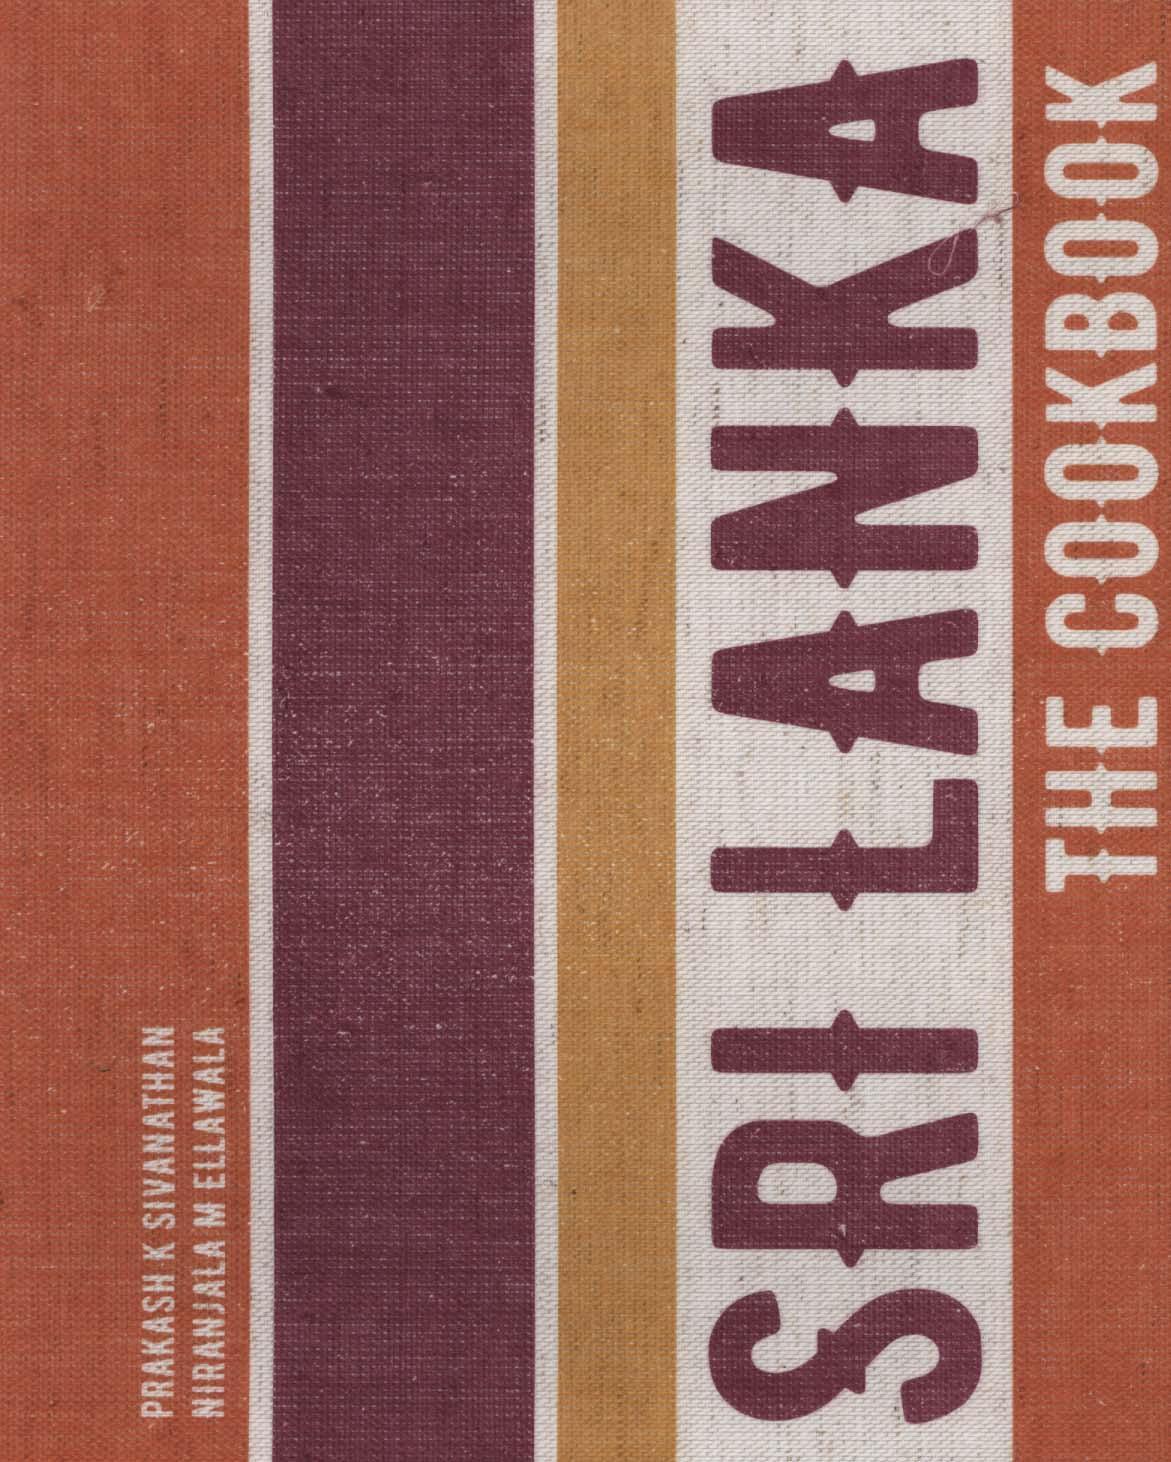 Sri Lanka: The Cookbook